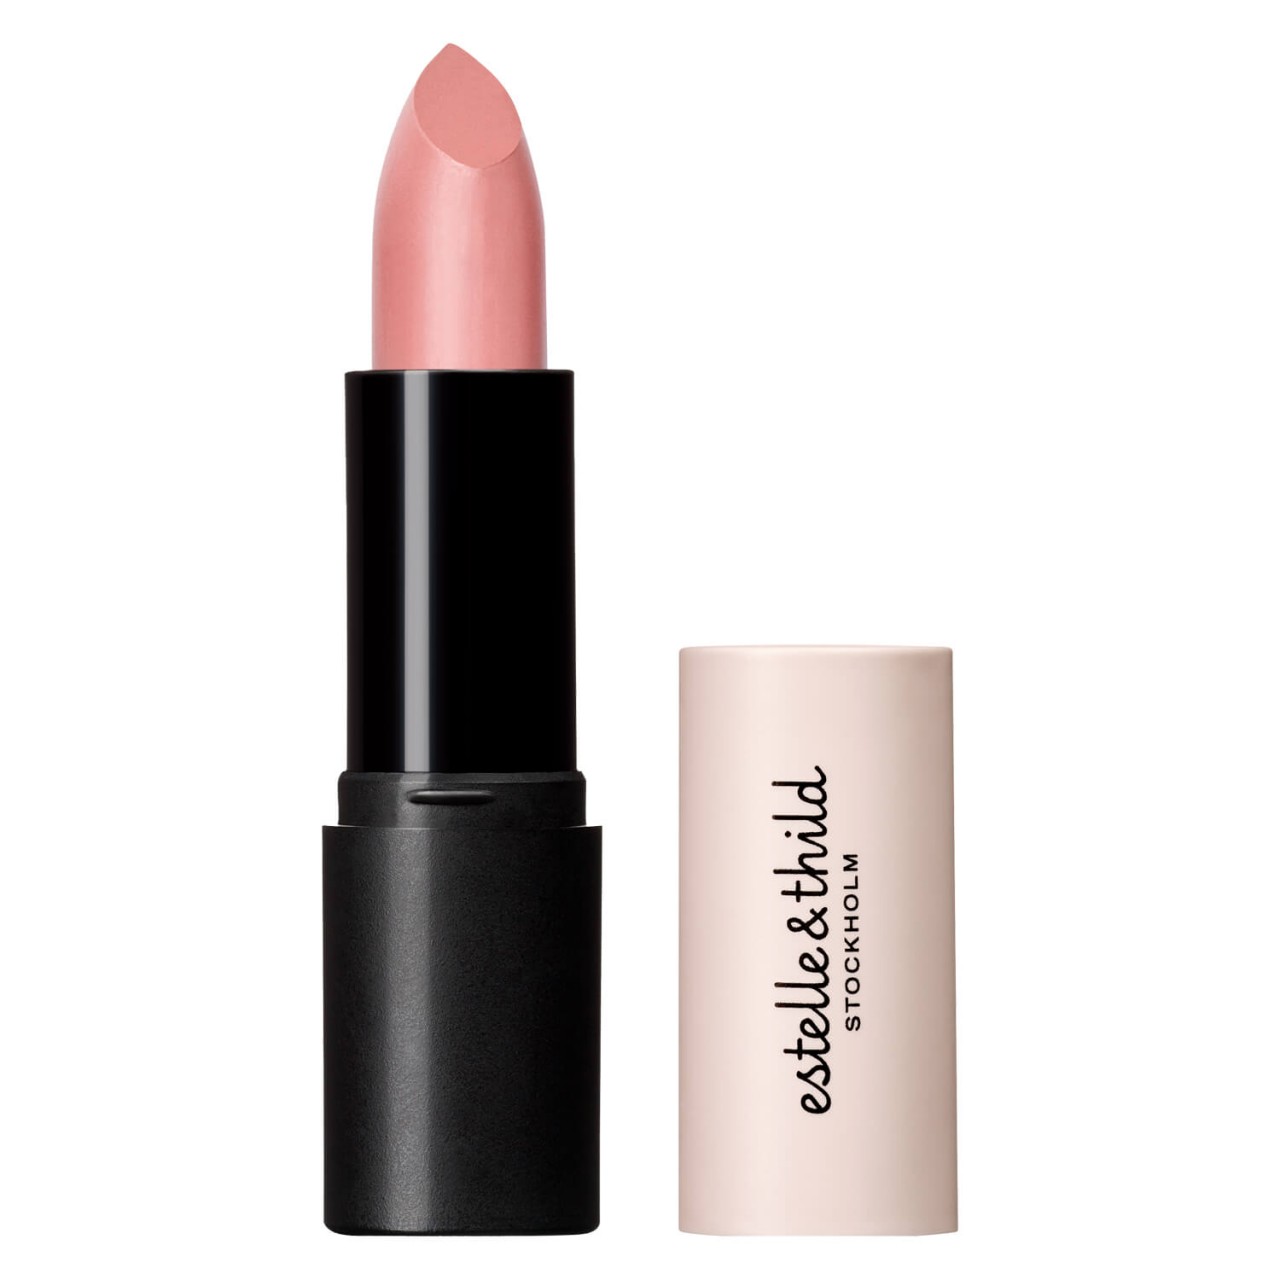 Estelle&Thild Make-Up - Cream Lipstick Caramel von Estelle&Thild